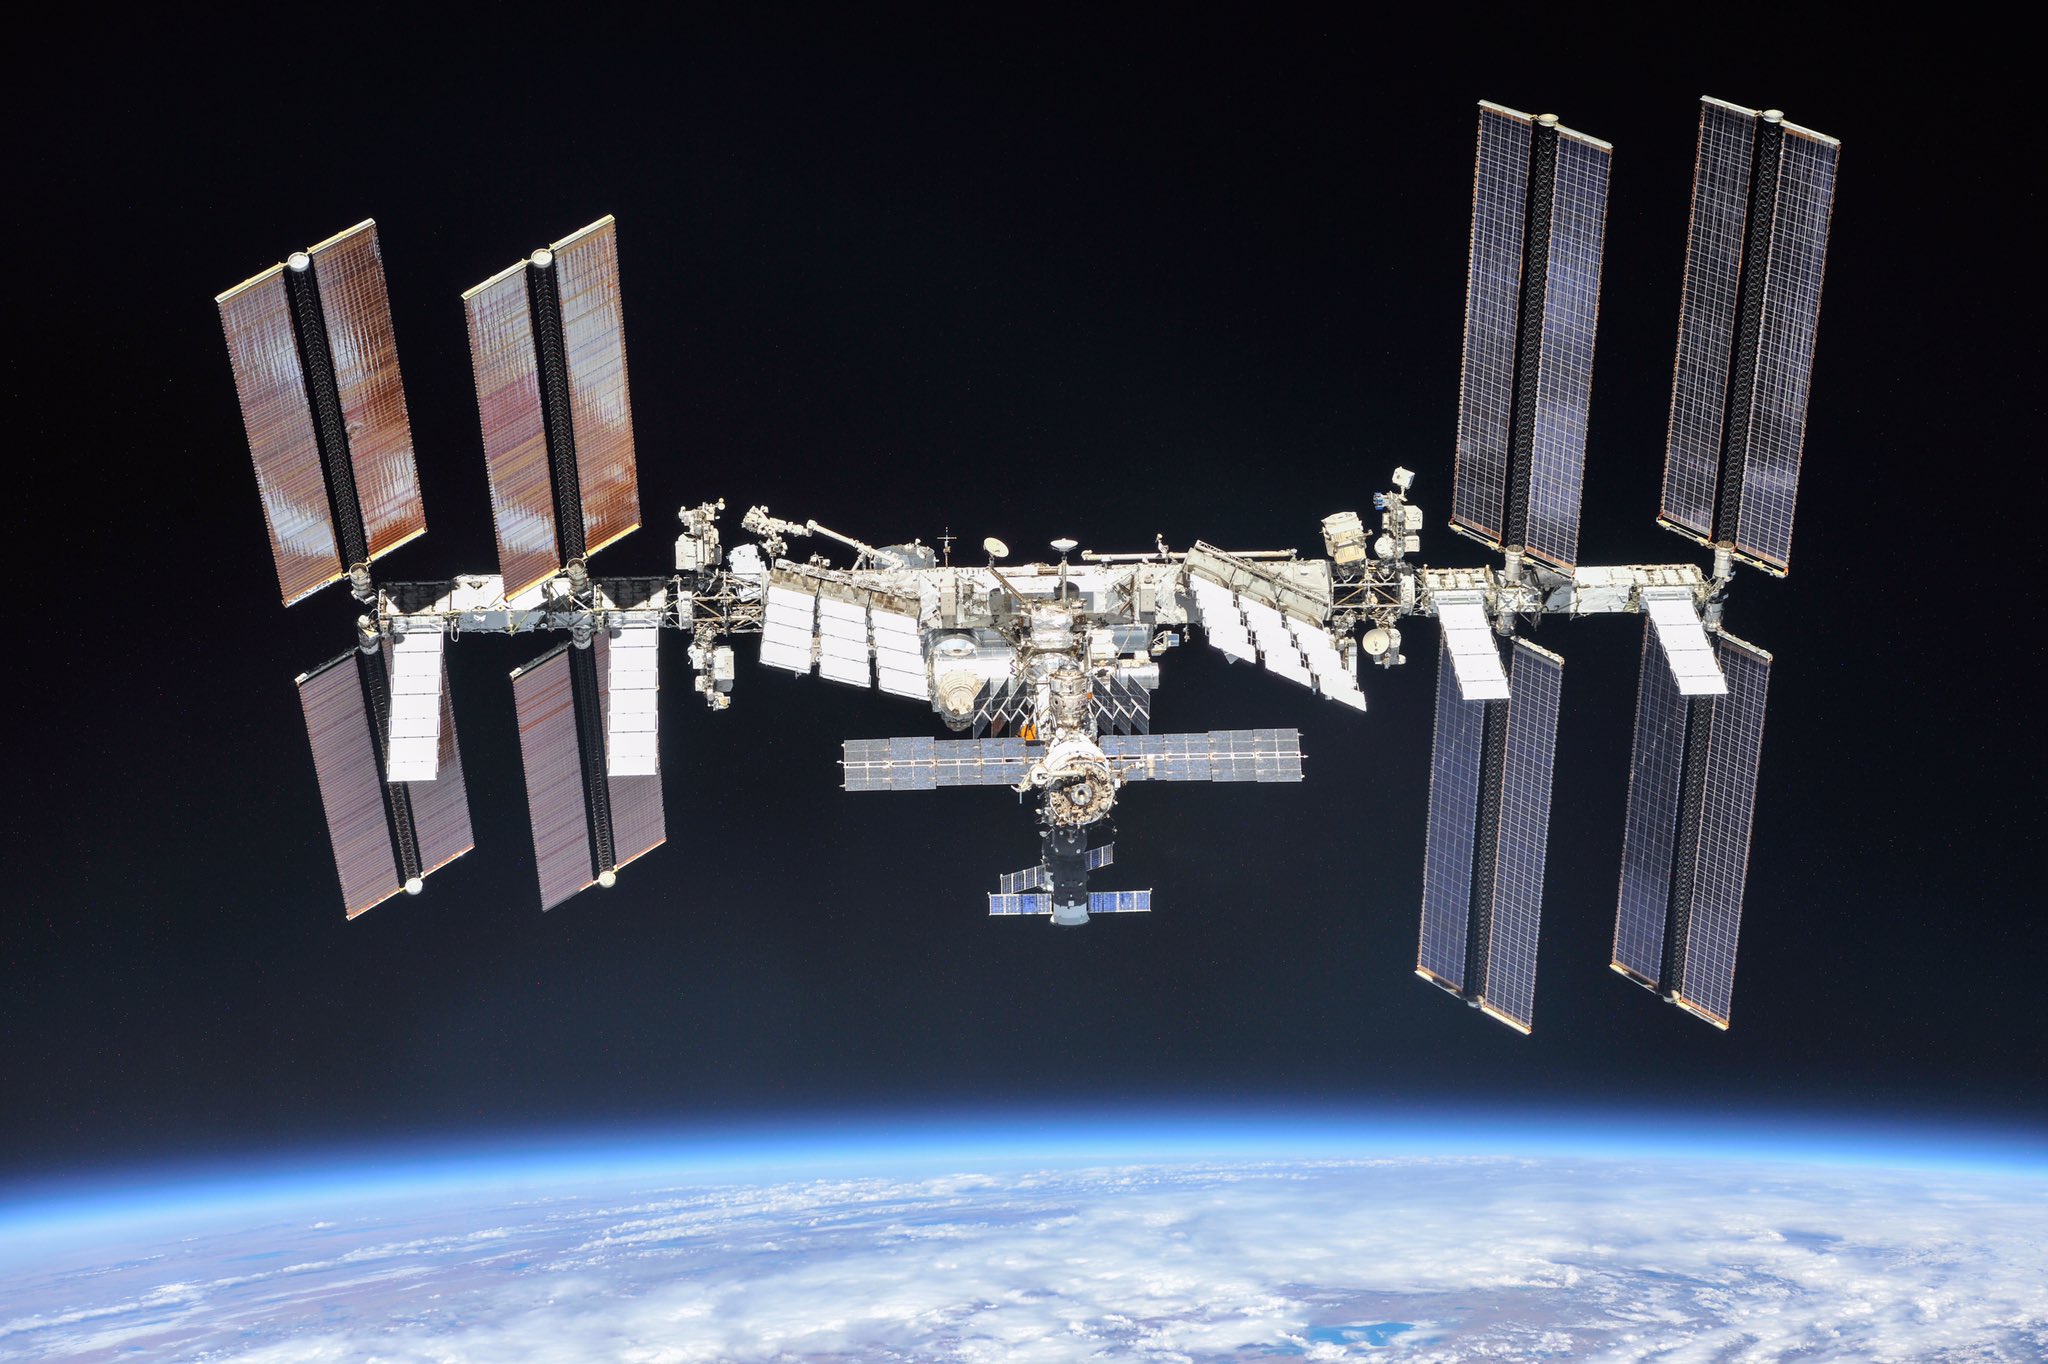 La Estación Espacial Internacional podrá ser vista esta noche en los cielos de Magallanes y la Patagonia